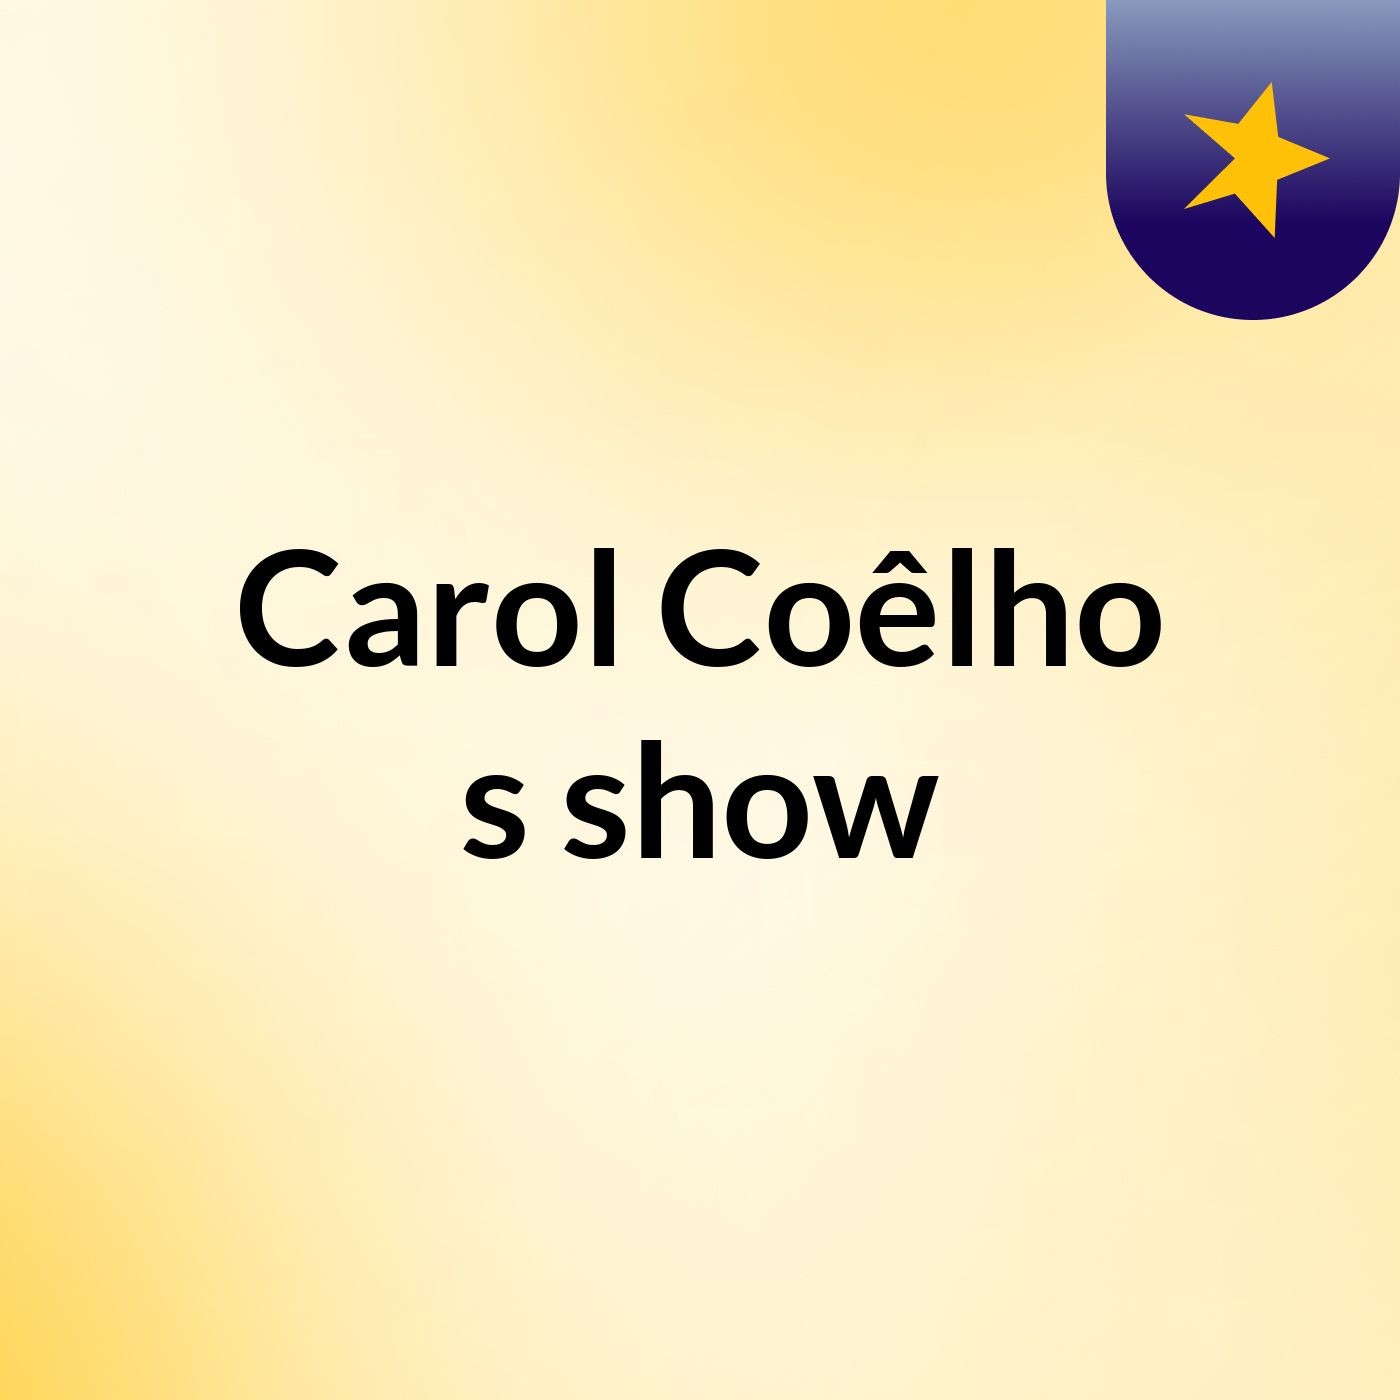 Carol Coêlho's show